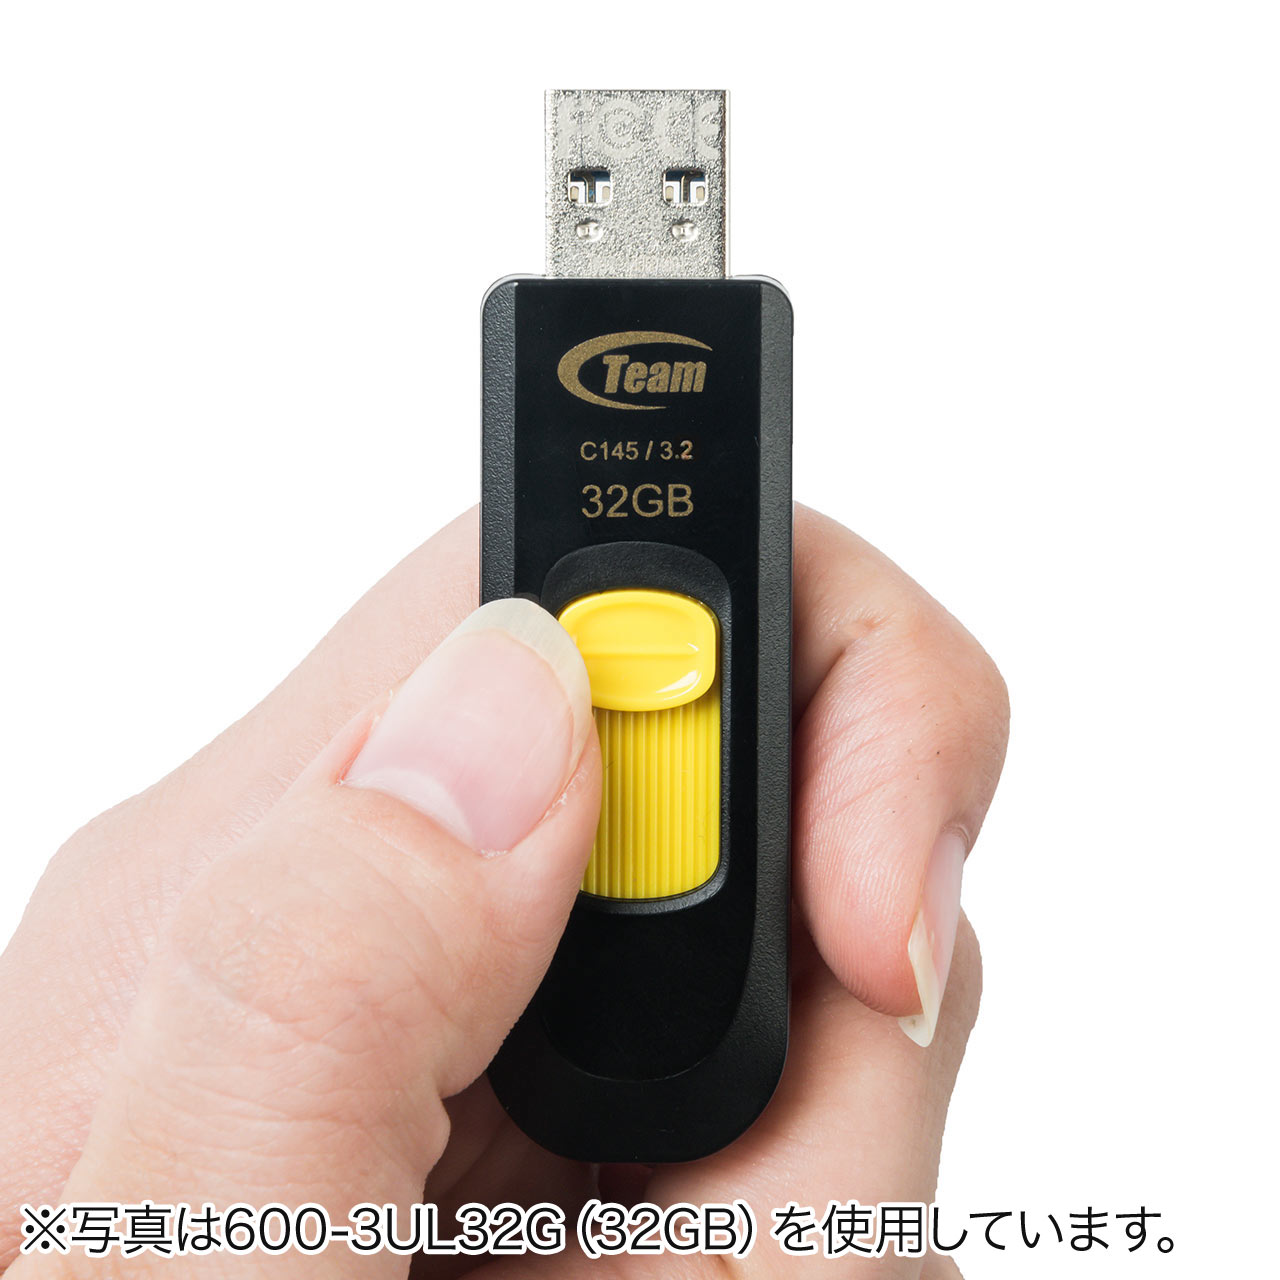 USBiUSB3.0E128GBEXChj 600-3UL128G